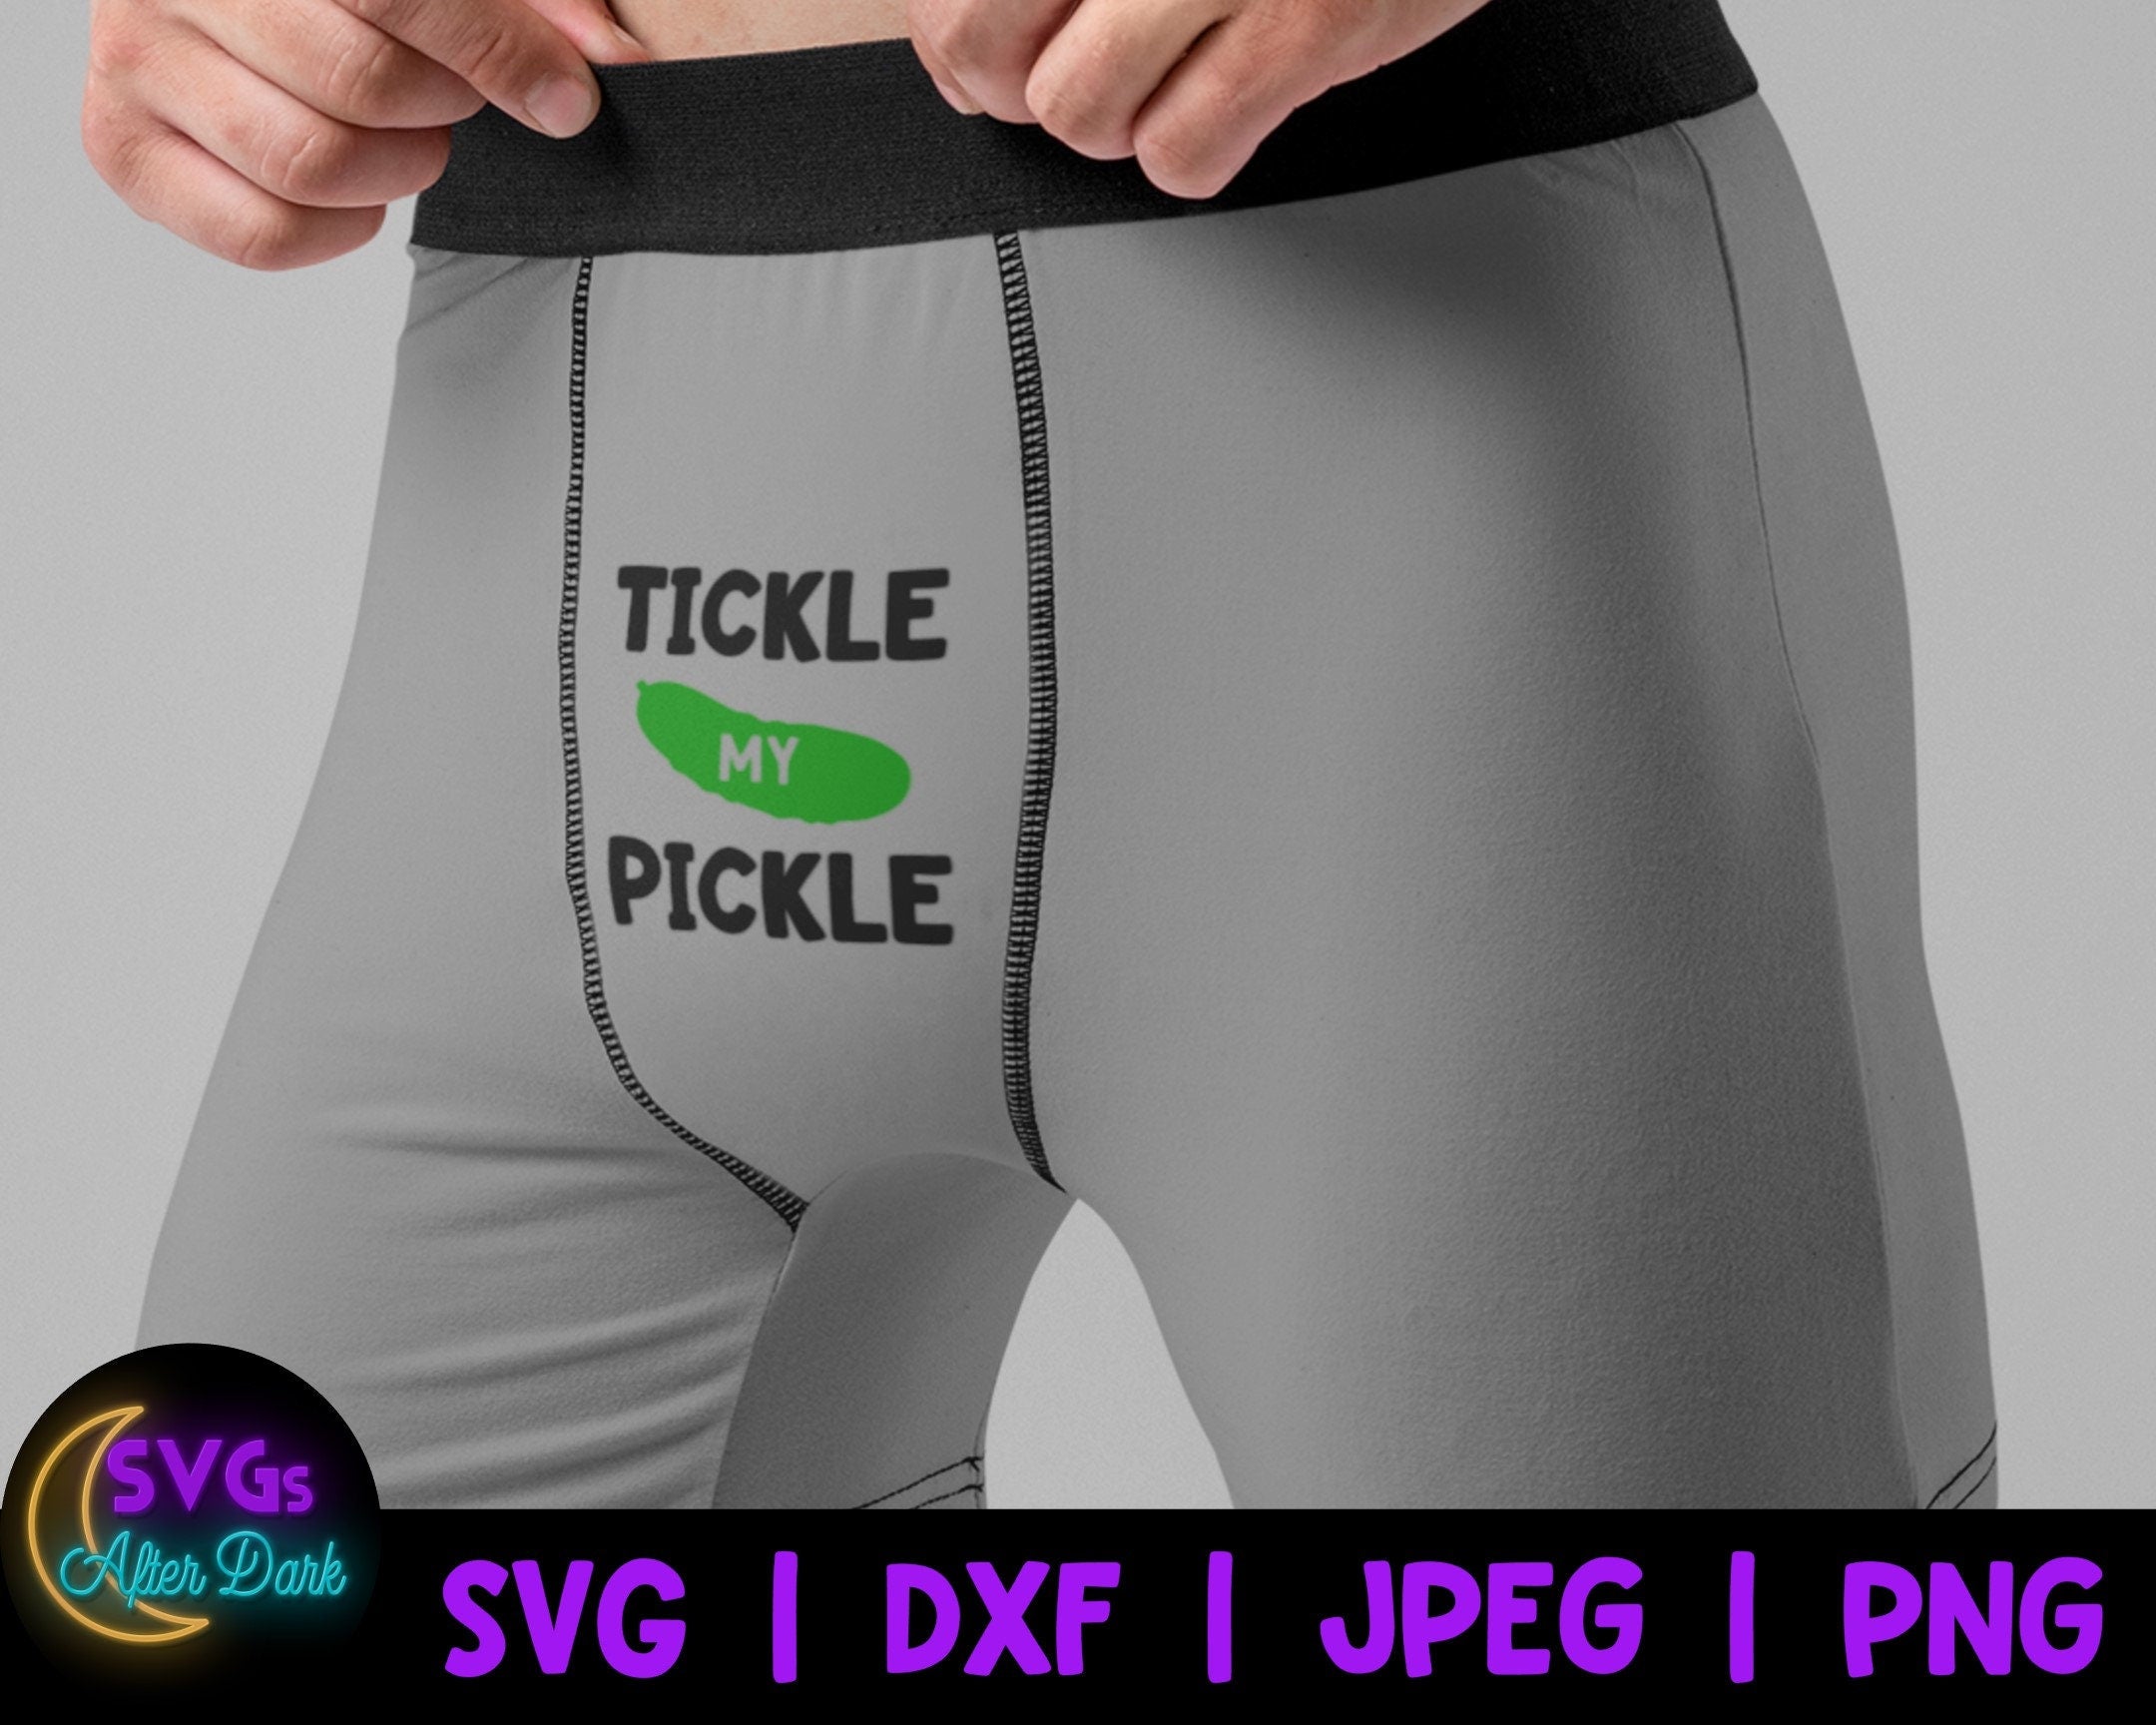 NSFW SVG - Tickle my Pickle SVG - Men's Underwear Svg